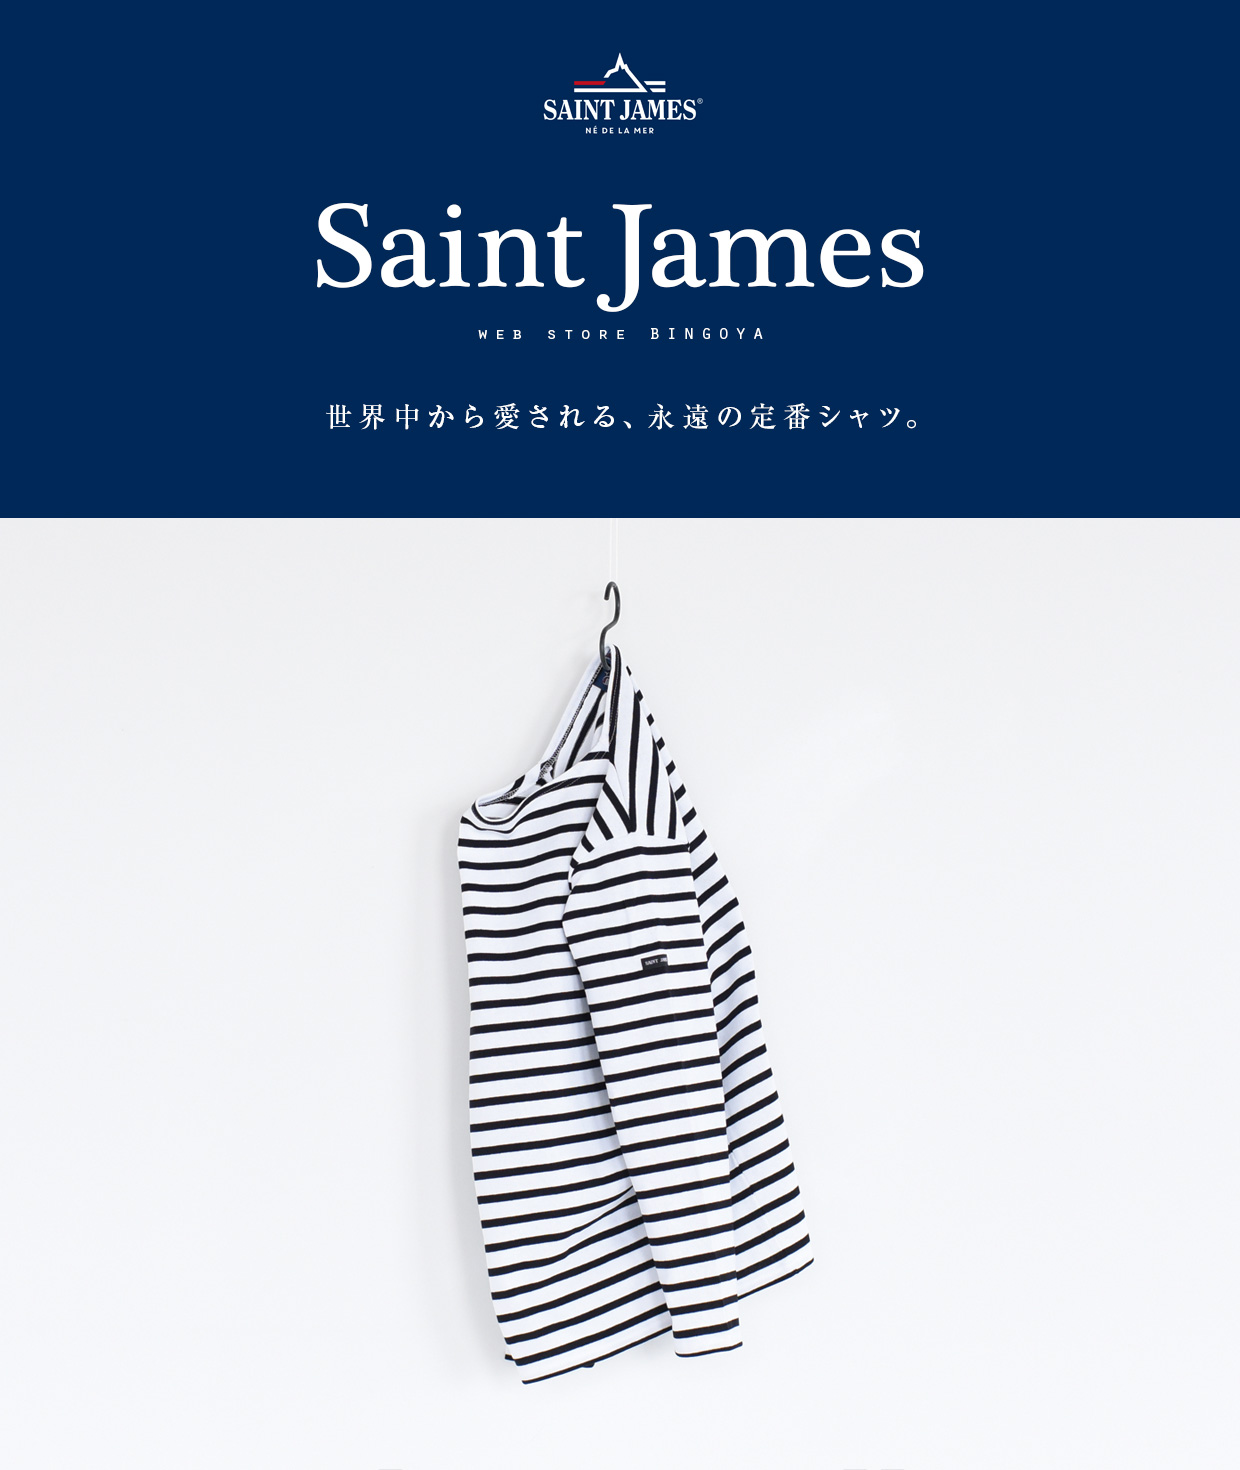 SAINT JAMES 世界中から愛される、永遠の定番シャツ